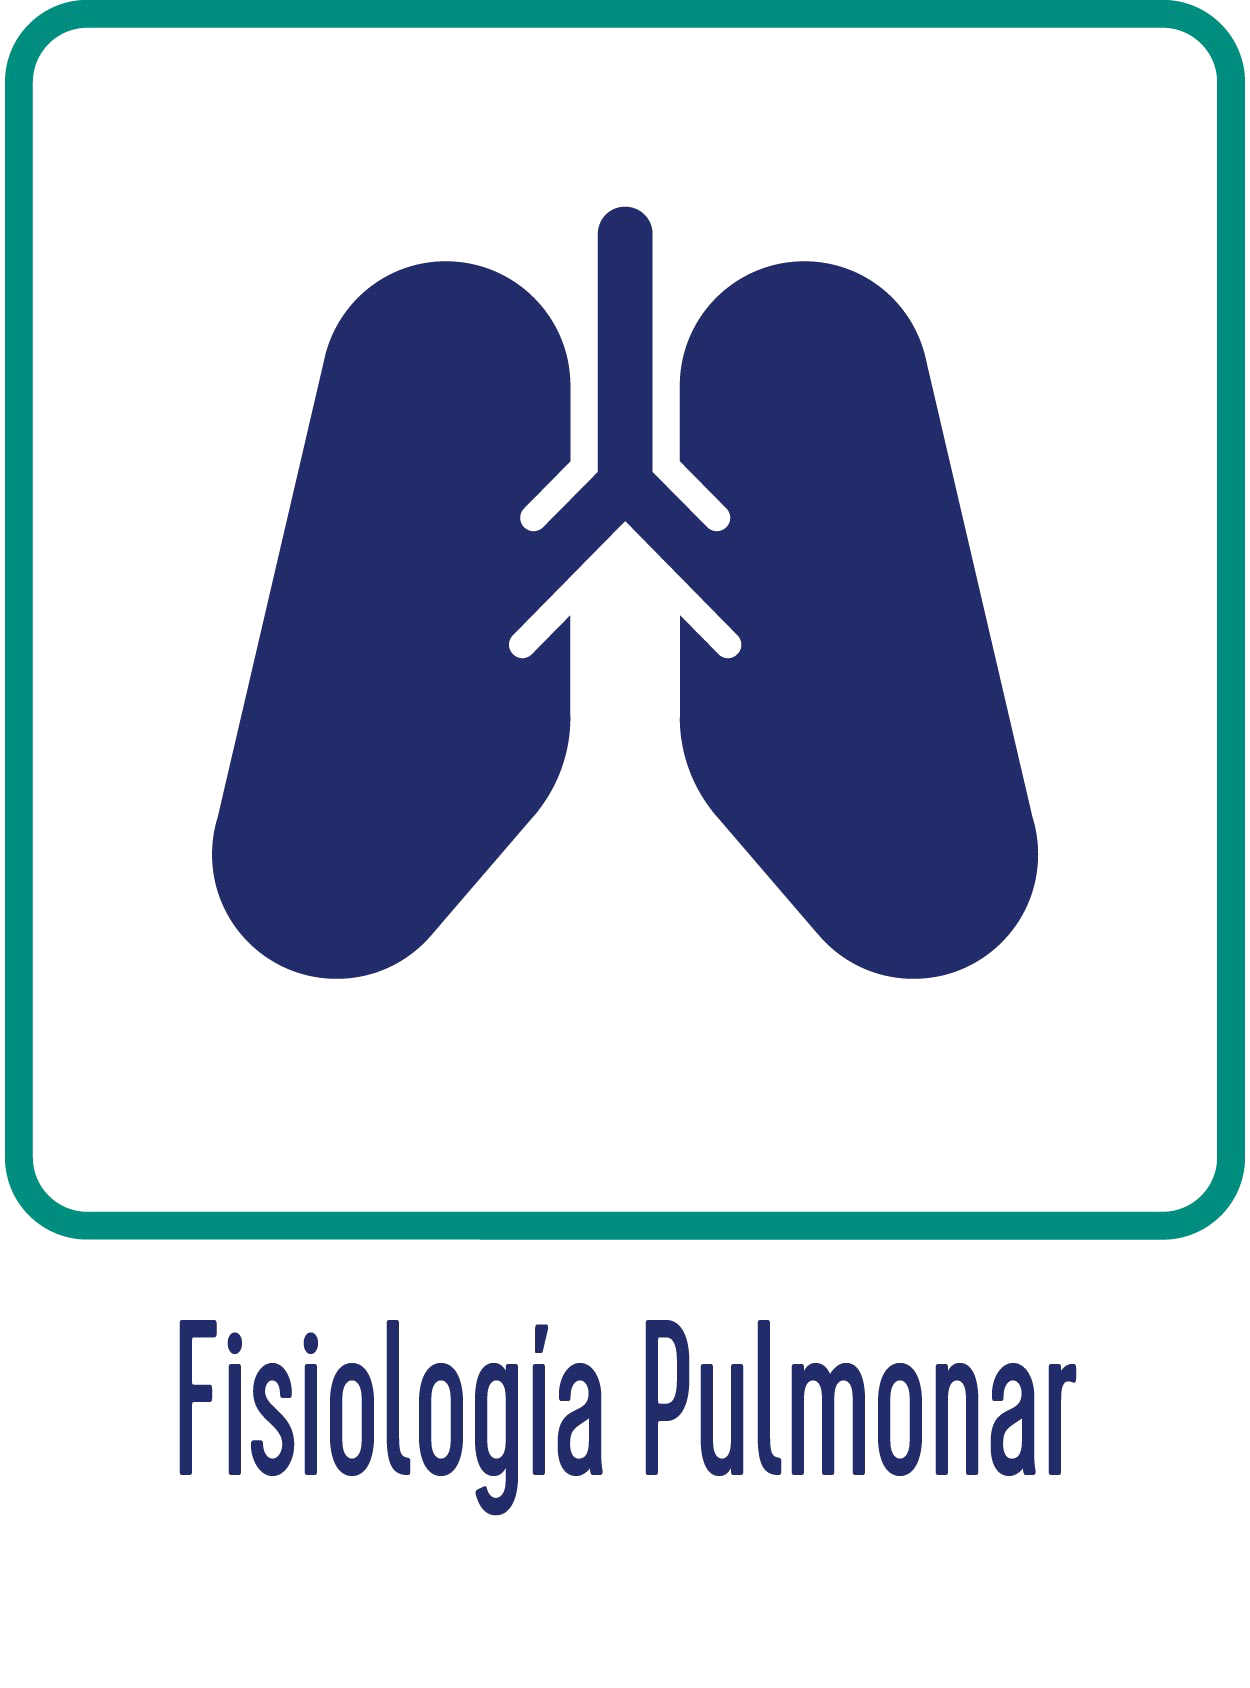 Fisionomía Pulmonar